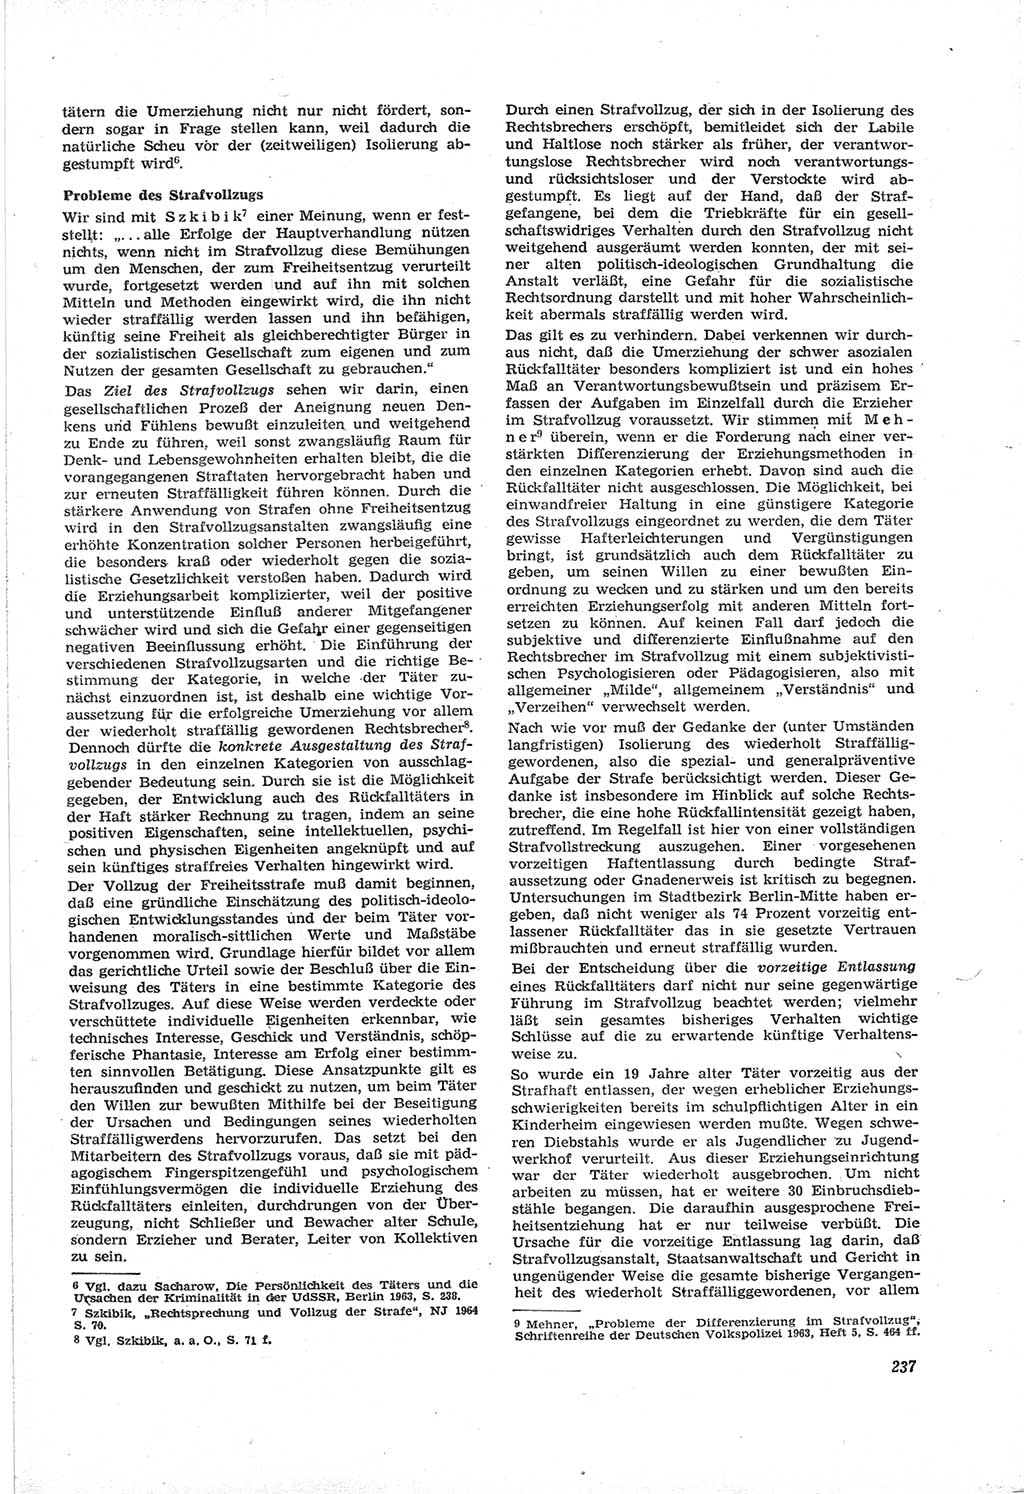 Neue Justiz (NJ), Zeitschrift für Recht und Rechtswissenschaft [Deutsche Demokratische Republik (DDR)], 18. Jahrgang 1964, Seite 237 (NJ DDR 1964, S. 237)